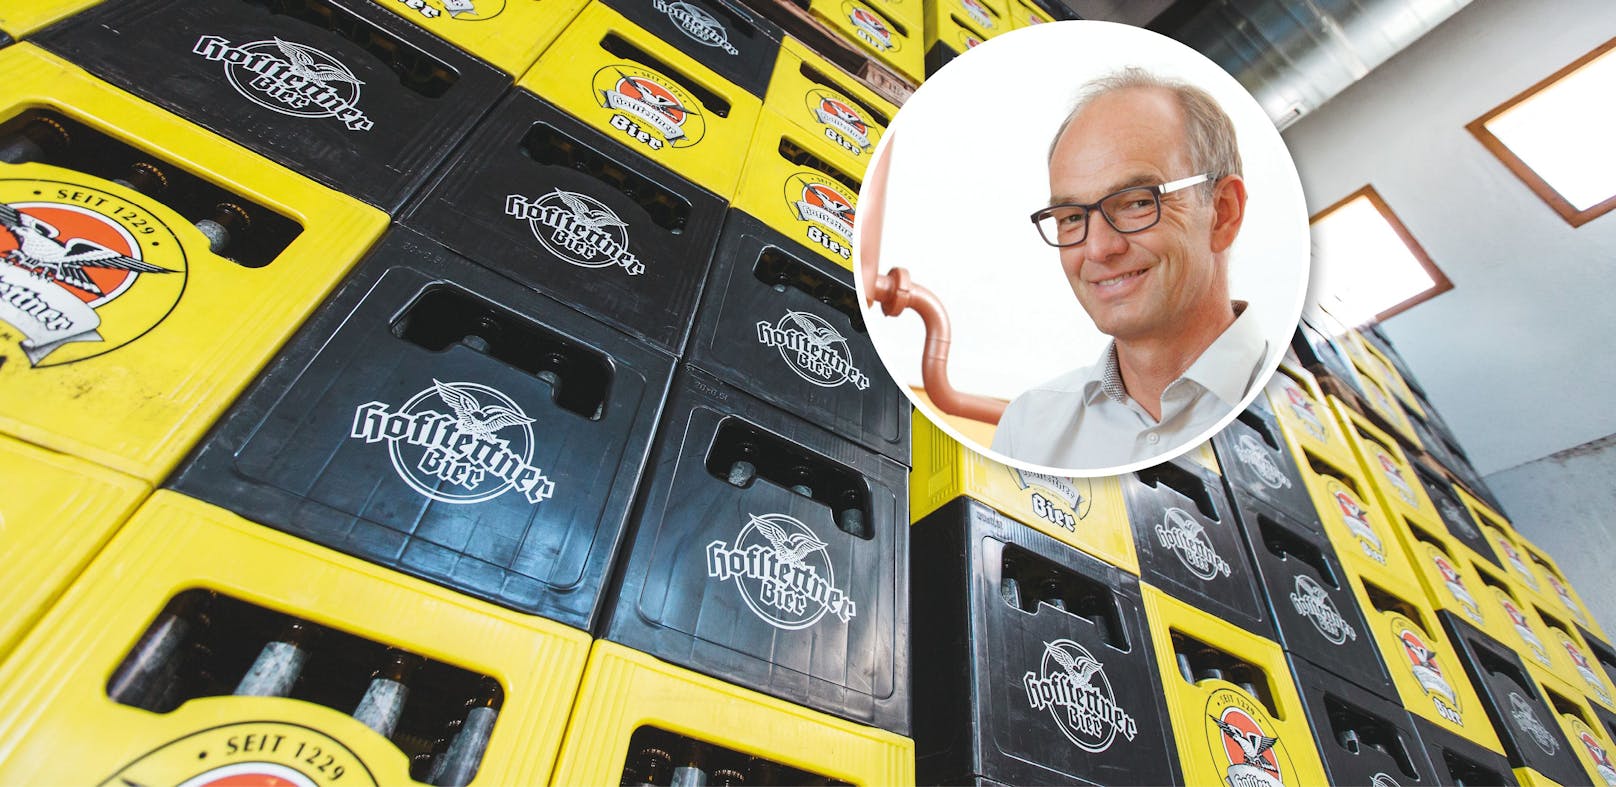 "Strom günstiger" – erste Brauerei senkt nun Bierpreis